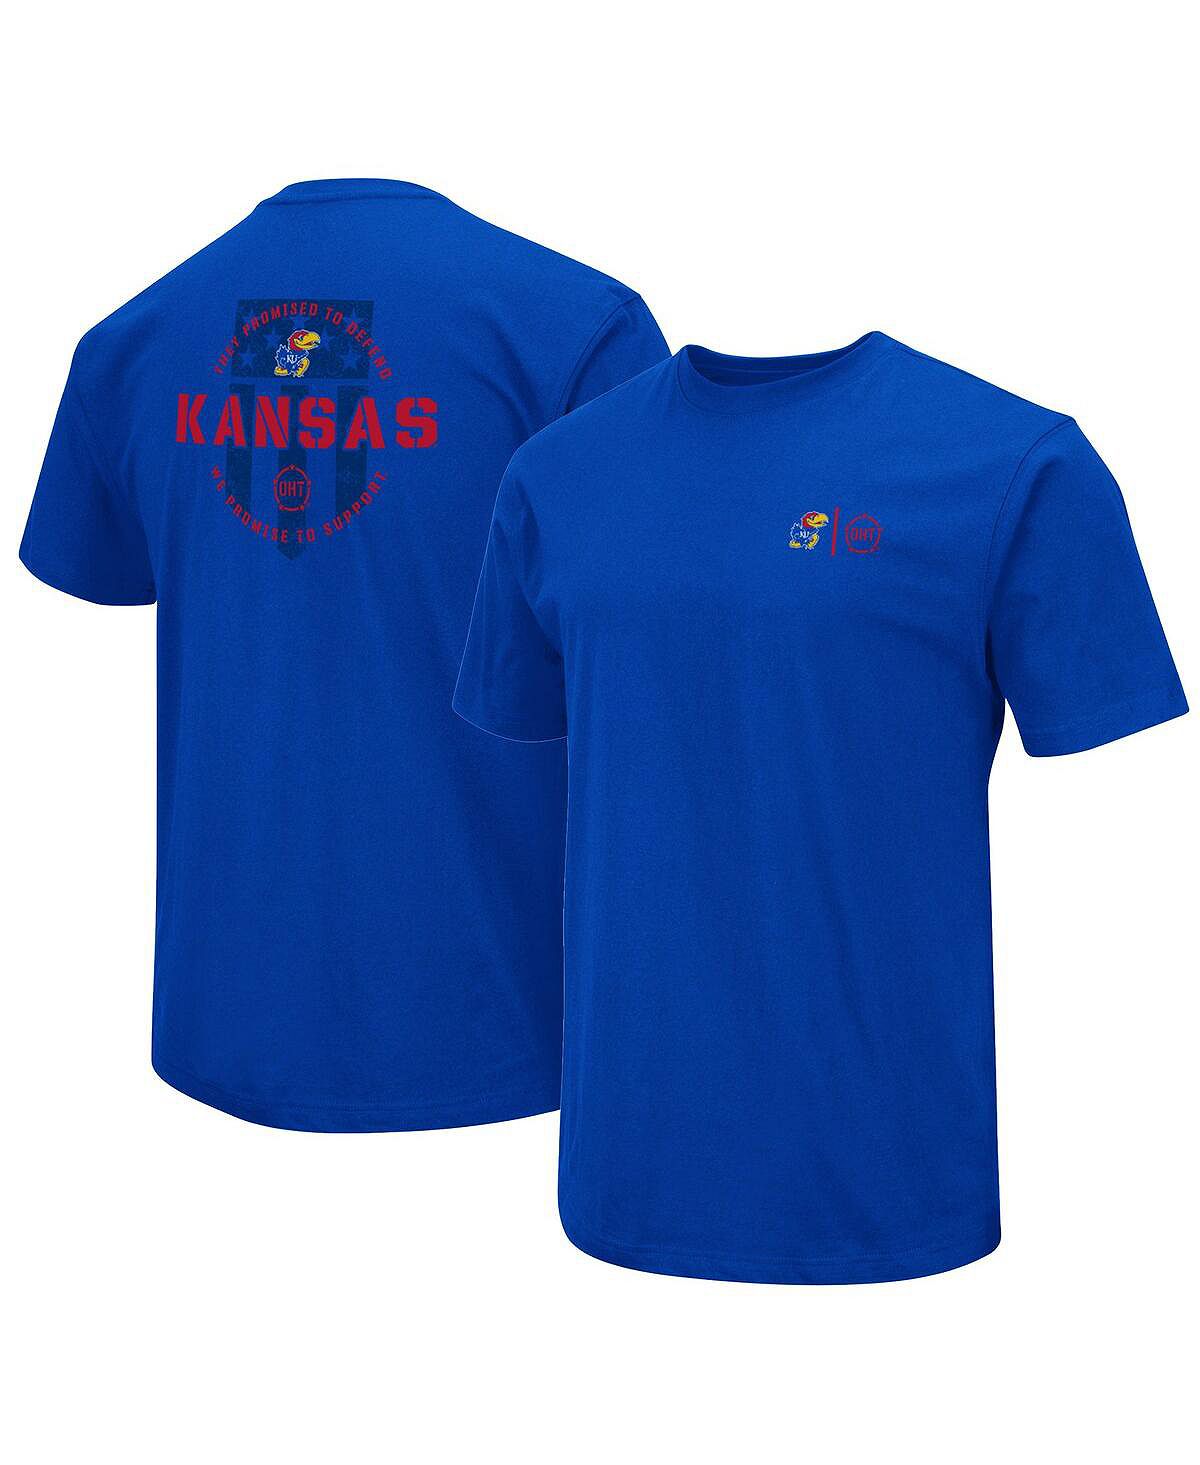 Мужская футболка Royal Kansas Jayhawks OHT в военном стиле с признательностью Colosseum шкаф пенал пг 60 канзас канзас